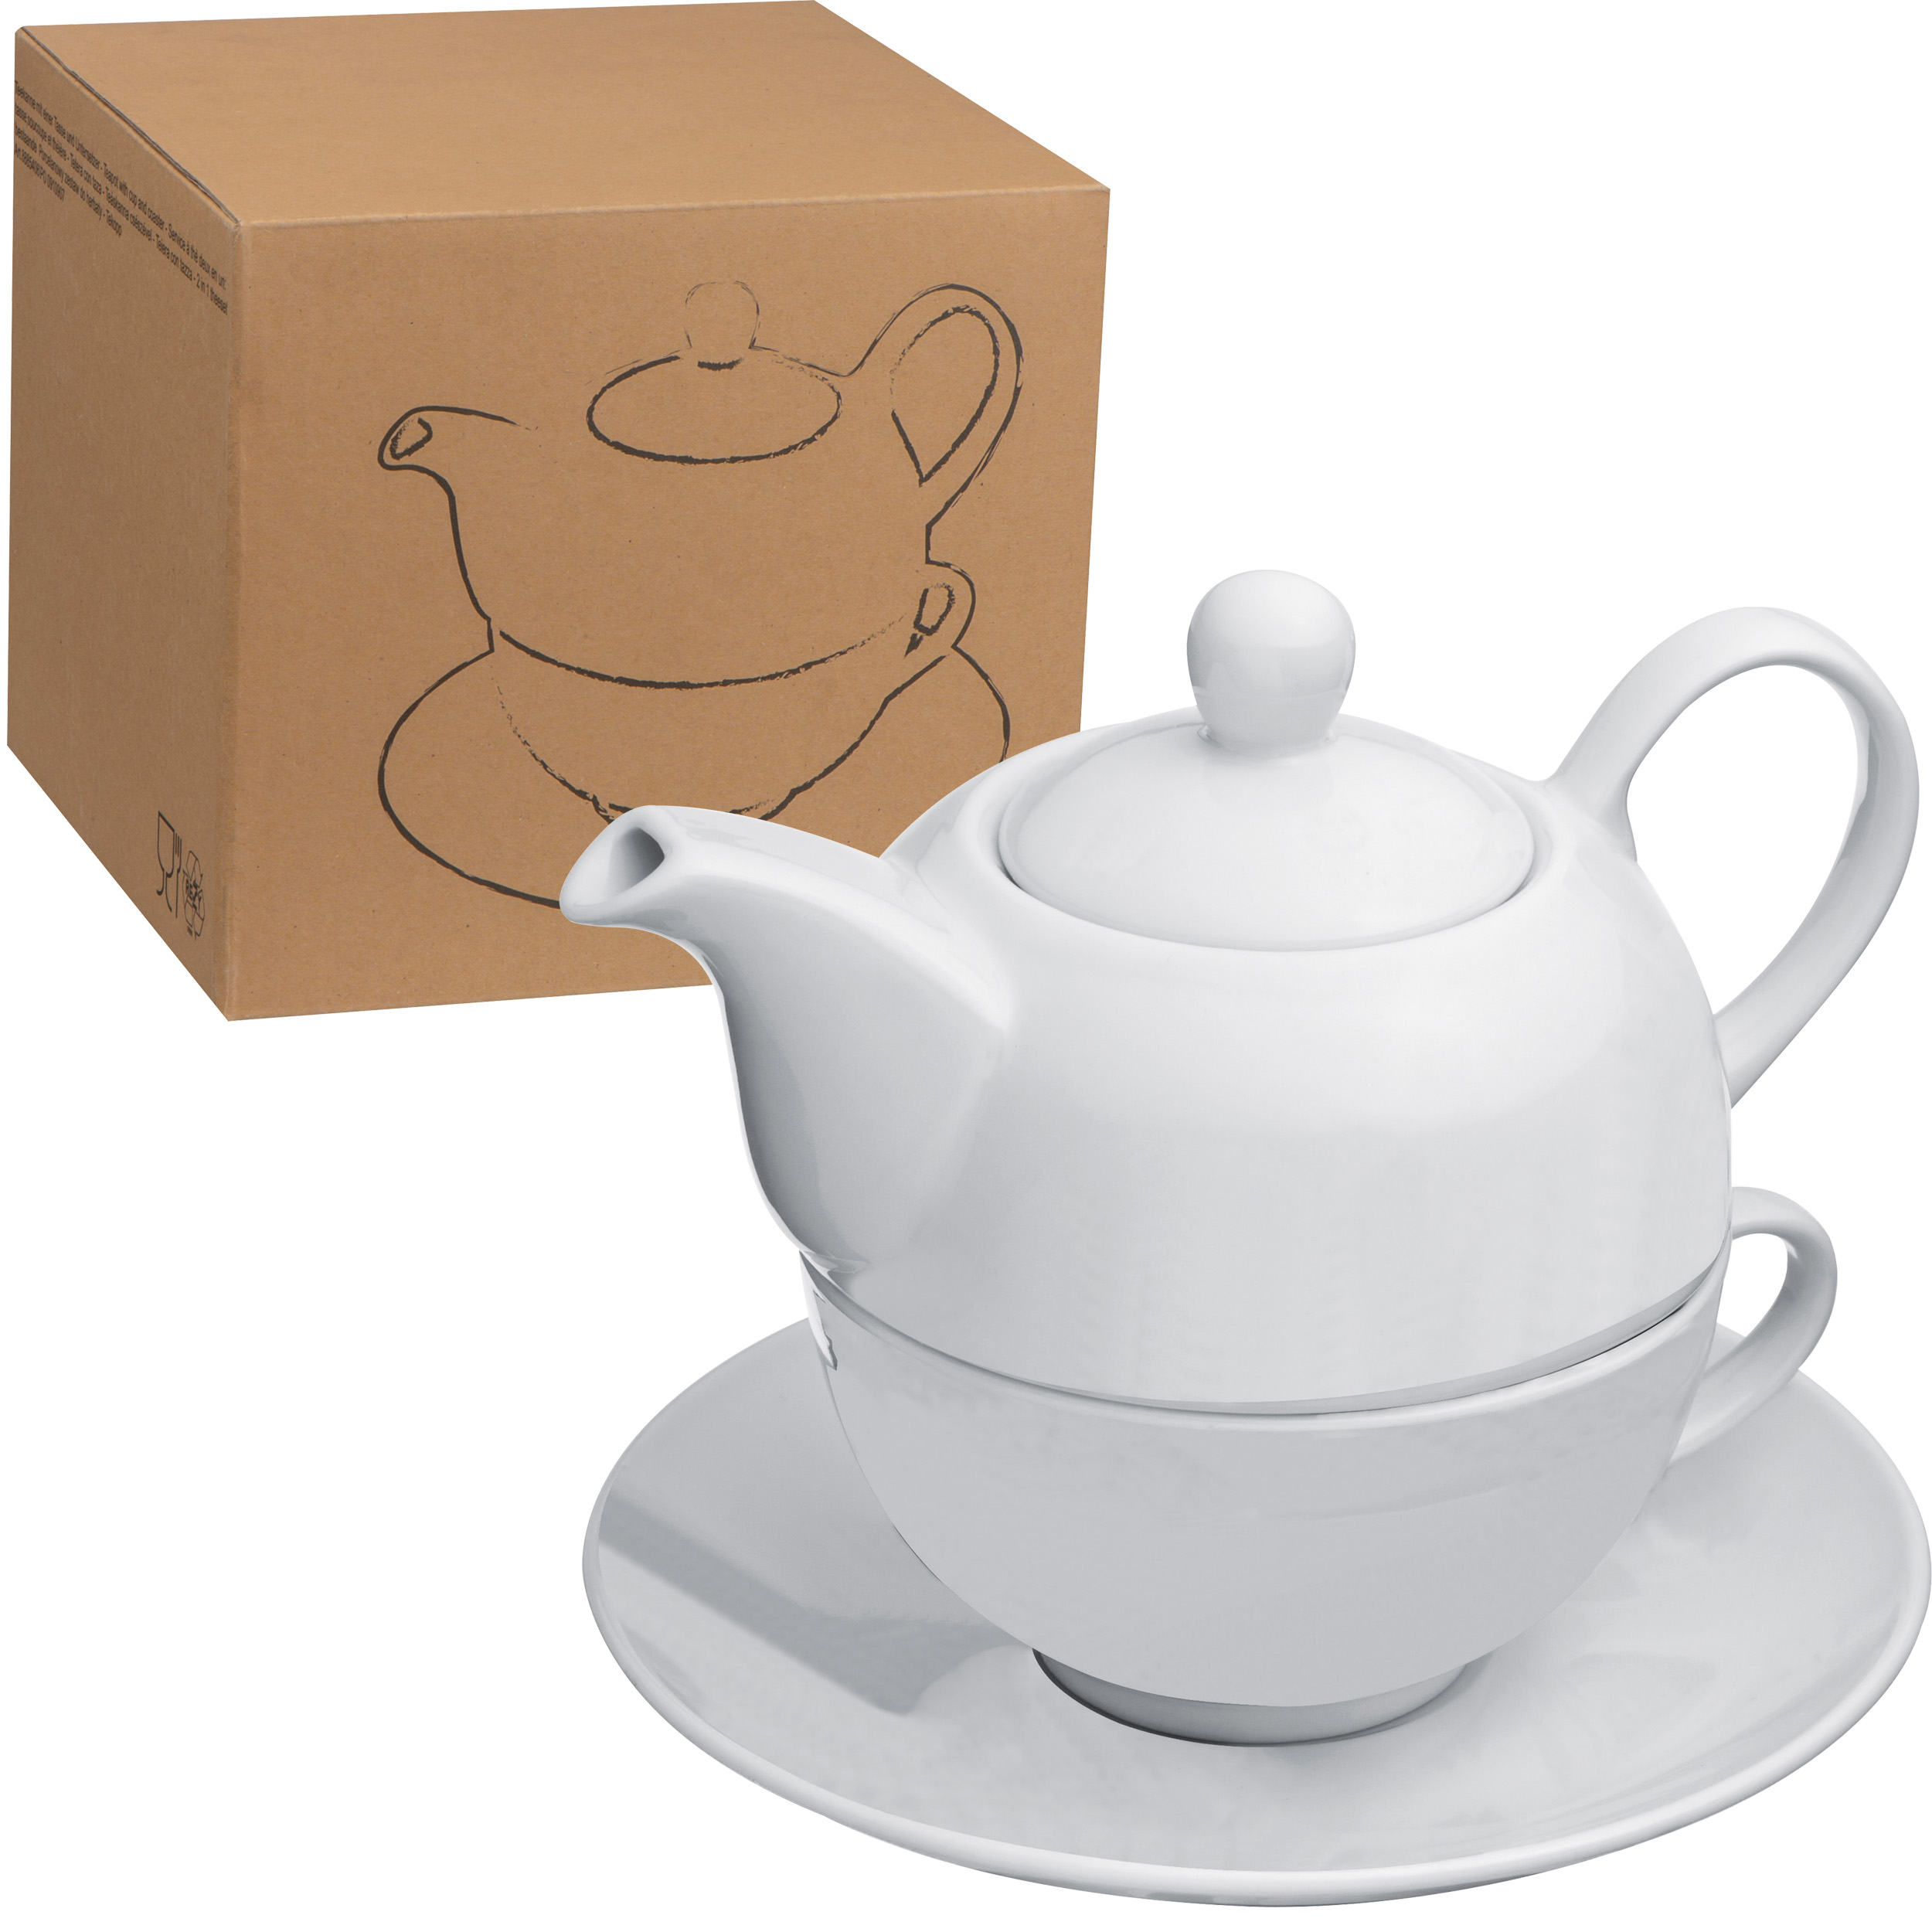 Teekanne (400 ml) mit einer Tasse (200 ml) und Untersetzer